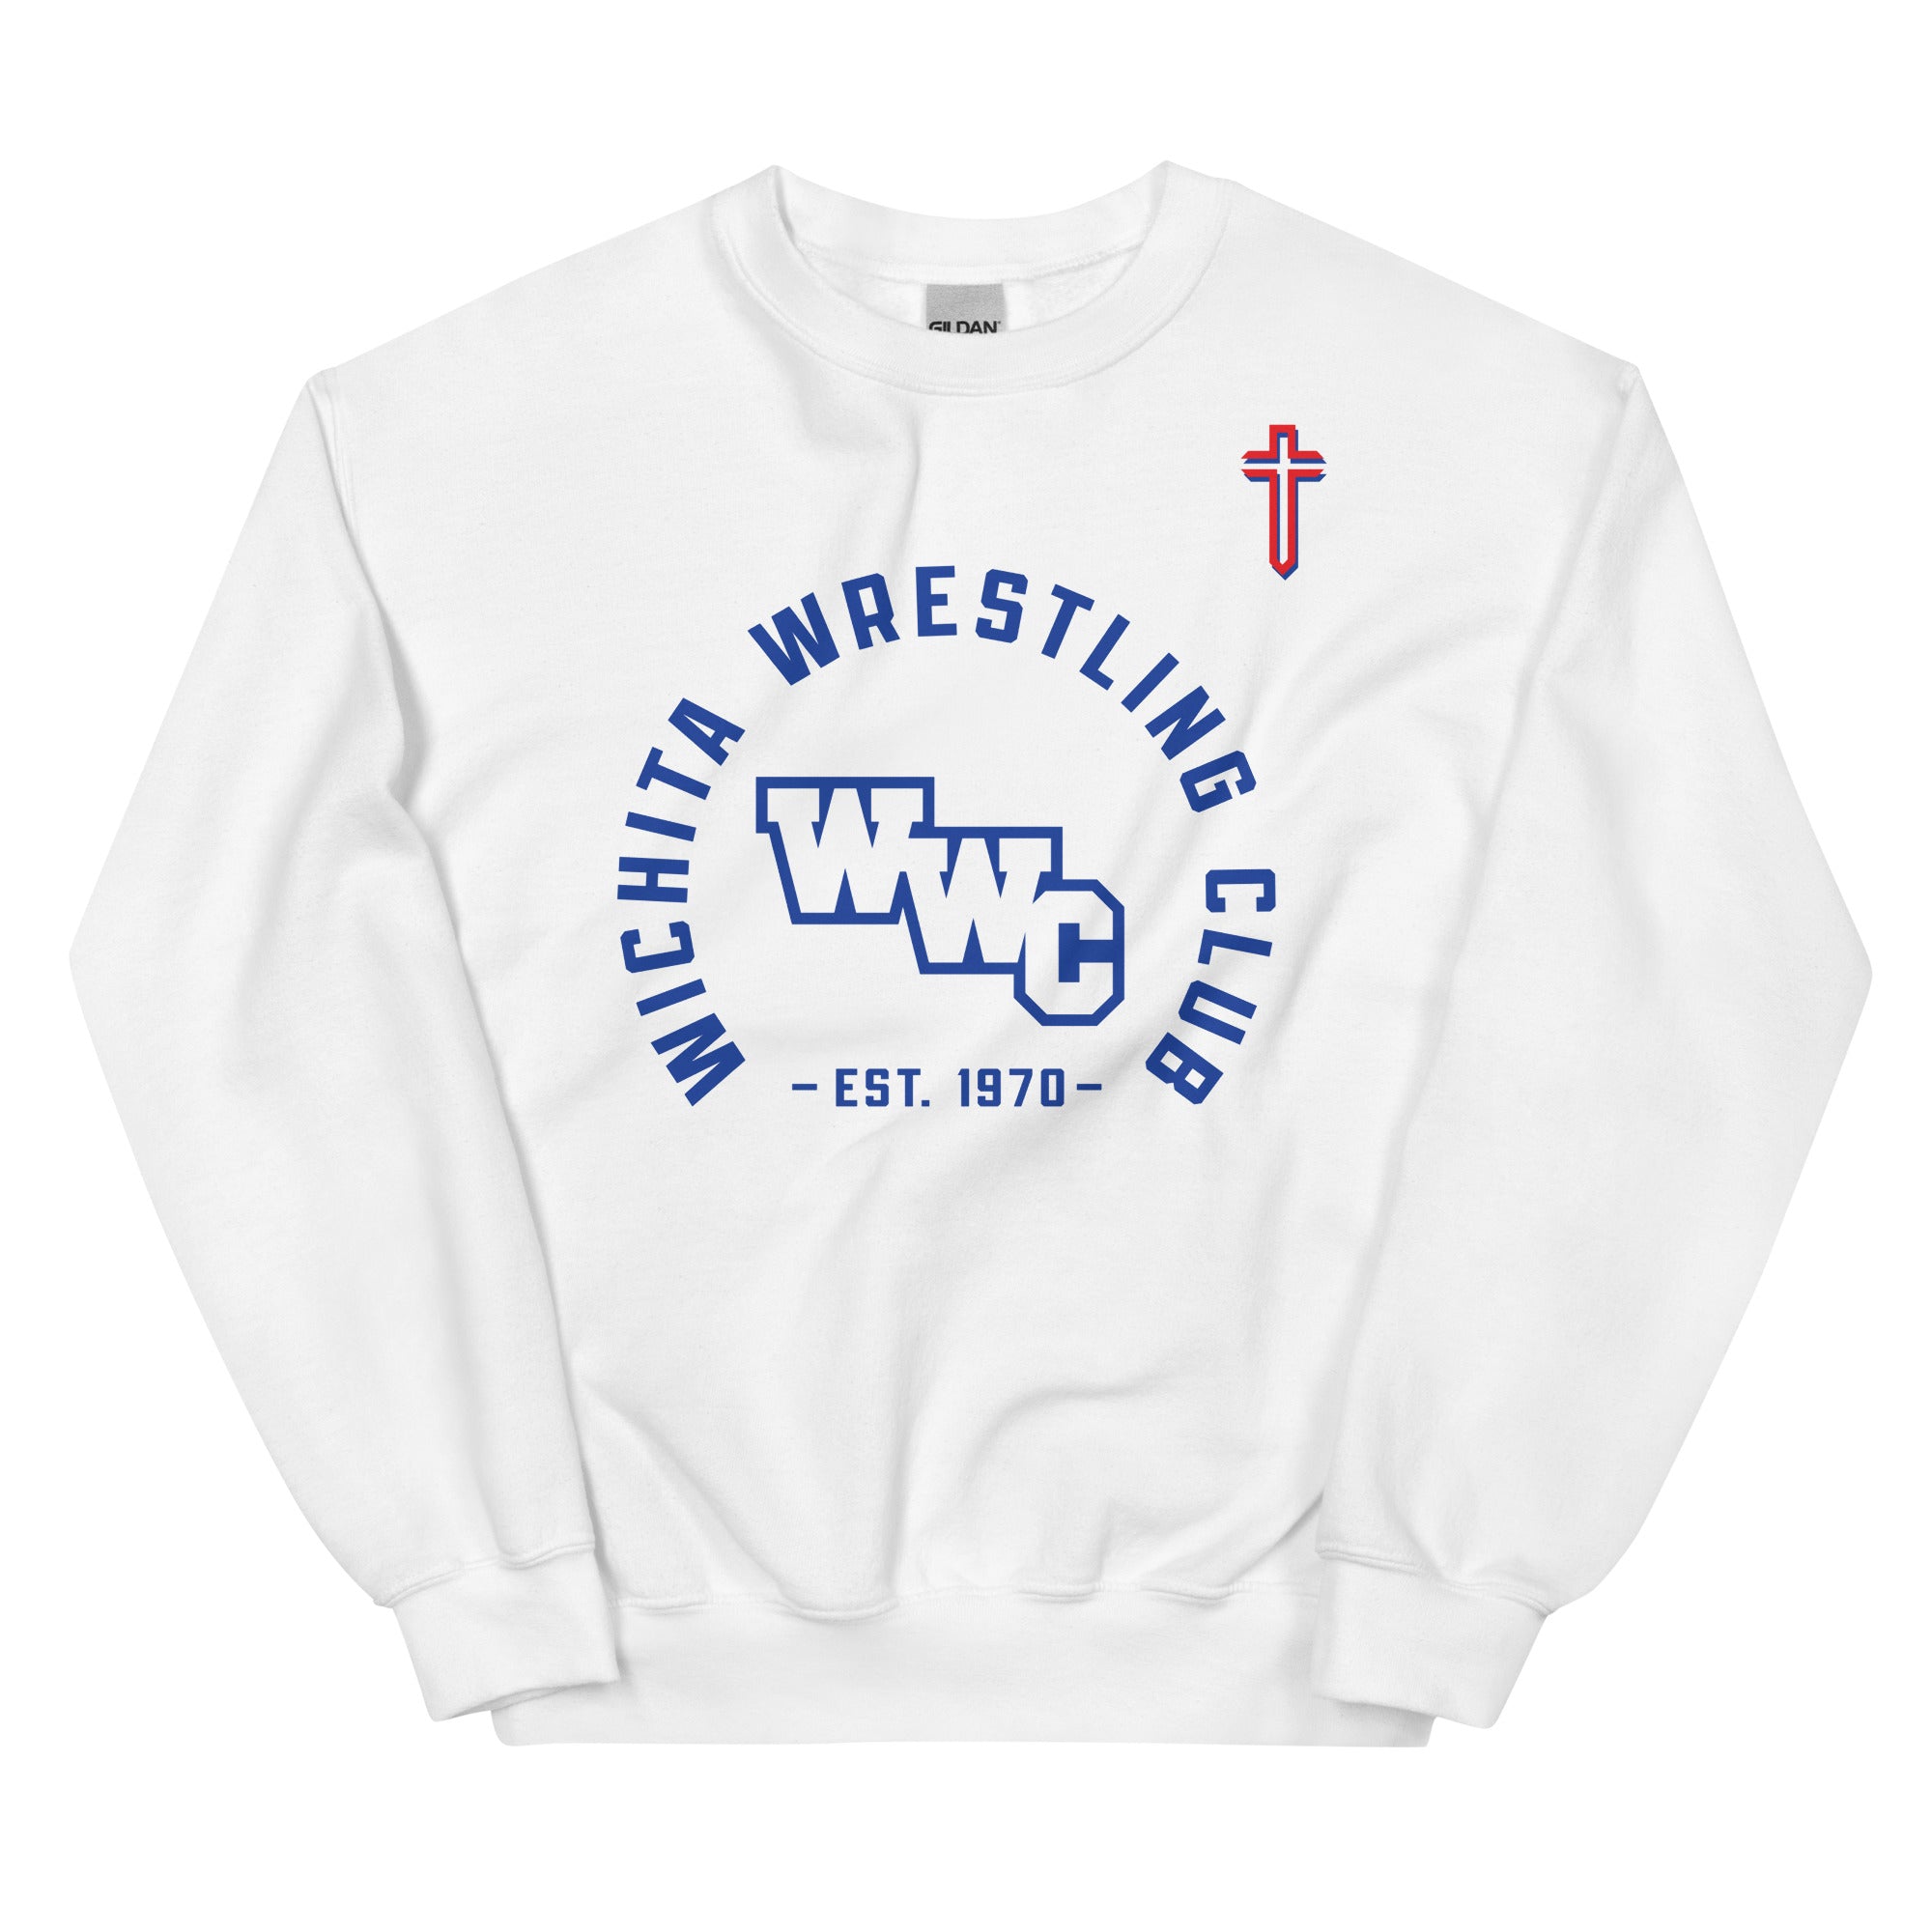 Wichita Wrestling Club Unisex Crew Neck Sweatshirt